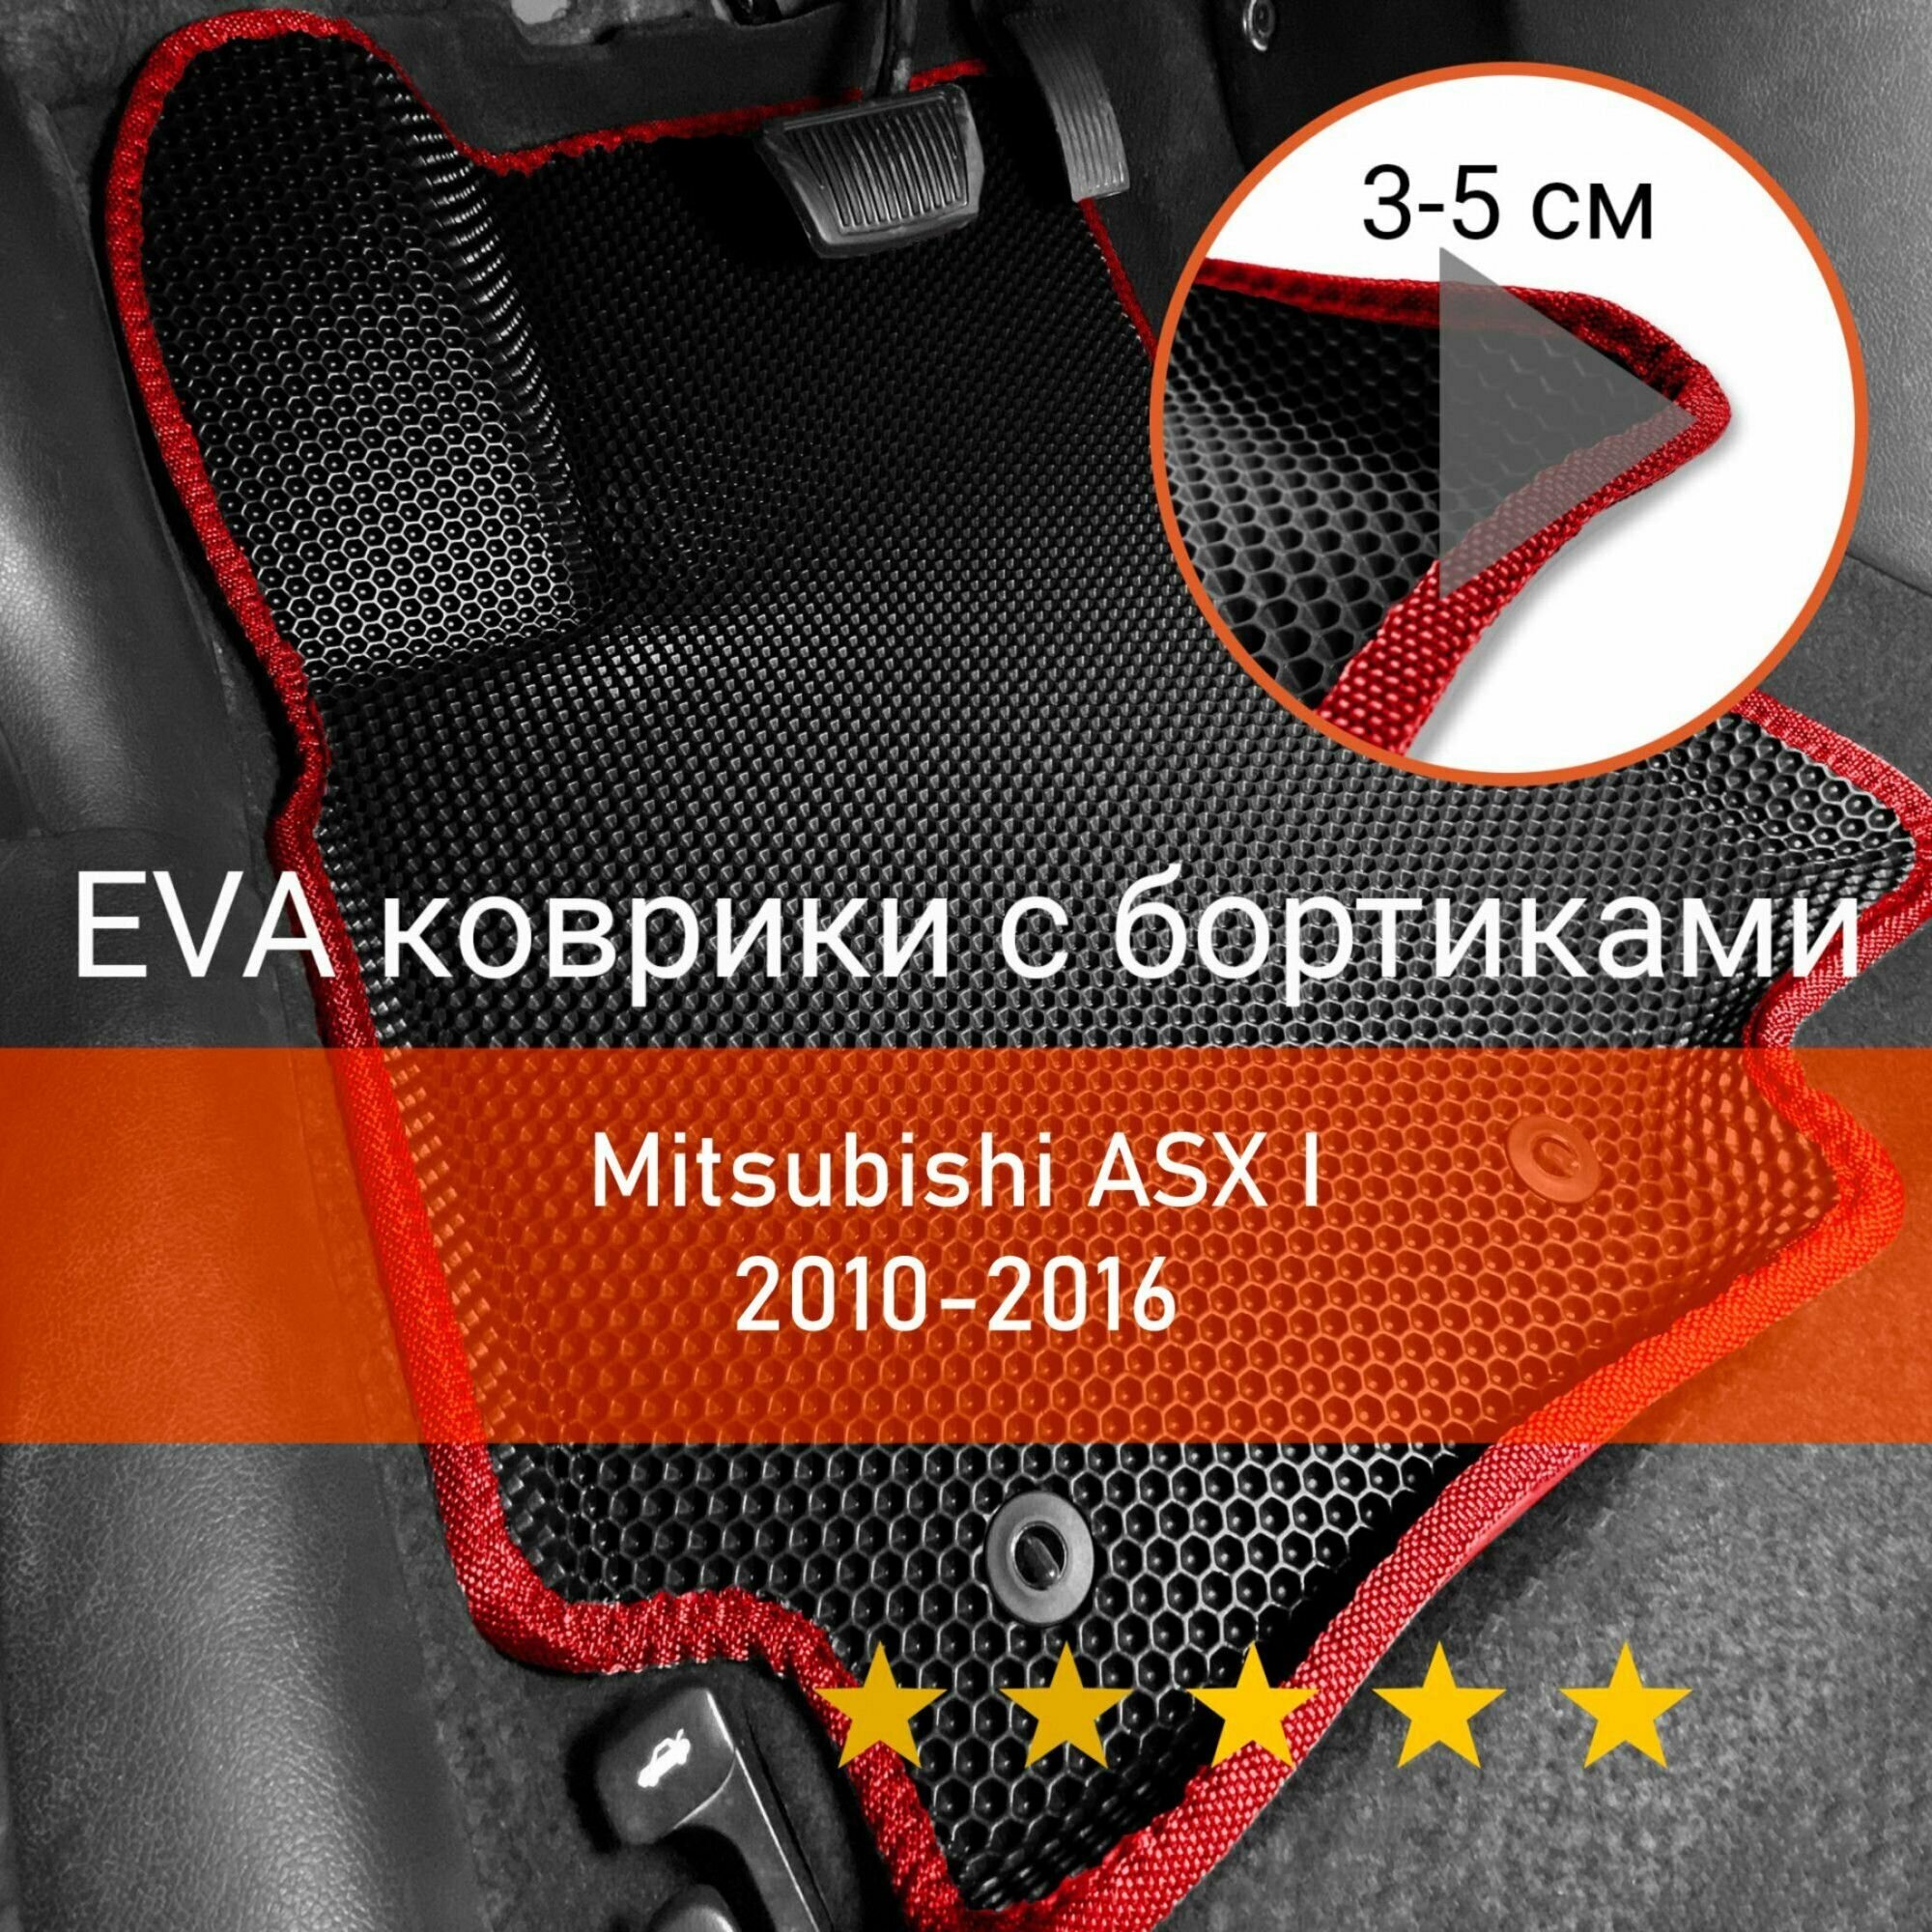 3Д коврики ЕВА (EVA, ЭВА) с бортиками на Mitsubishi ASX 1 2010-2016 Митсубиси (Мицубиси, Мицубиши) АСХ, АСикс Левый руль Соты Черный с красной окантовкой